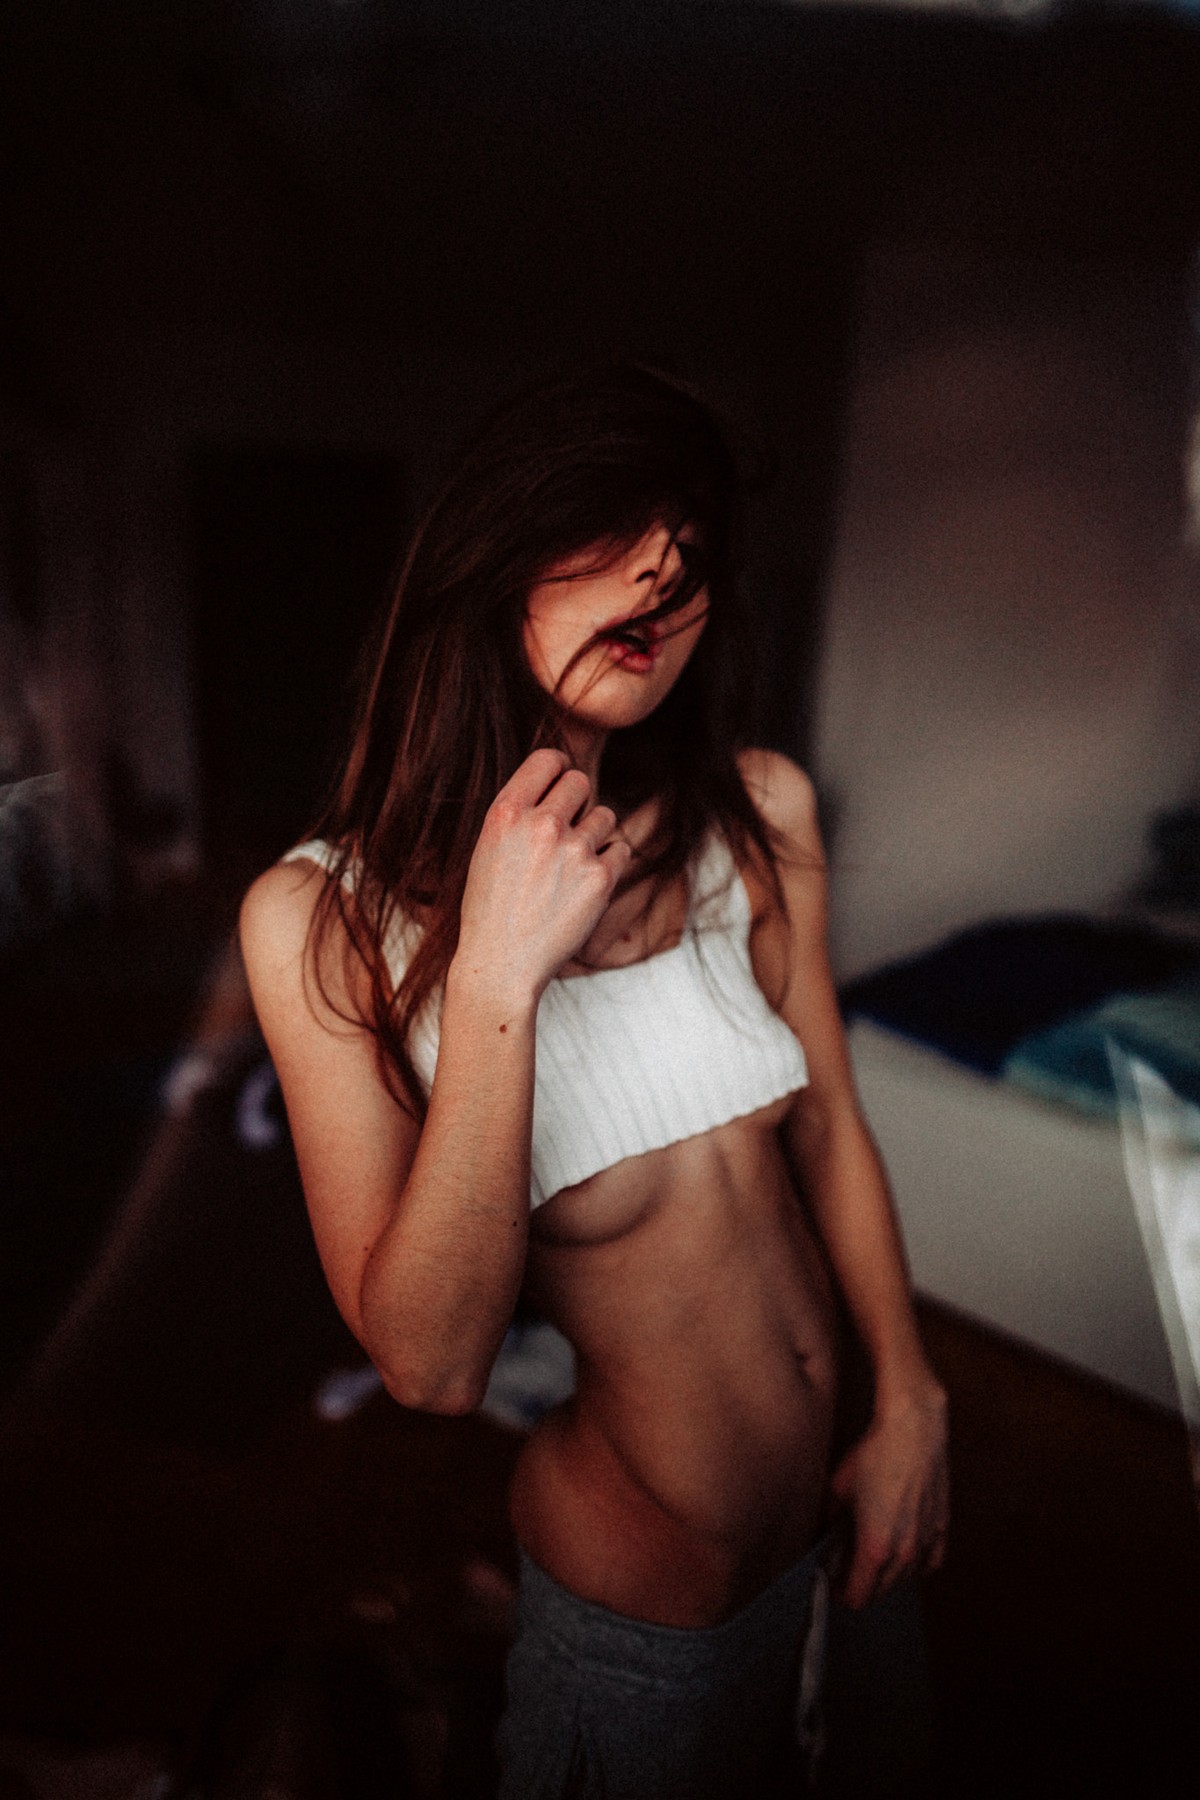 Чувственные снимки девушек от Тони Андреаса Рудольфа